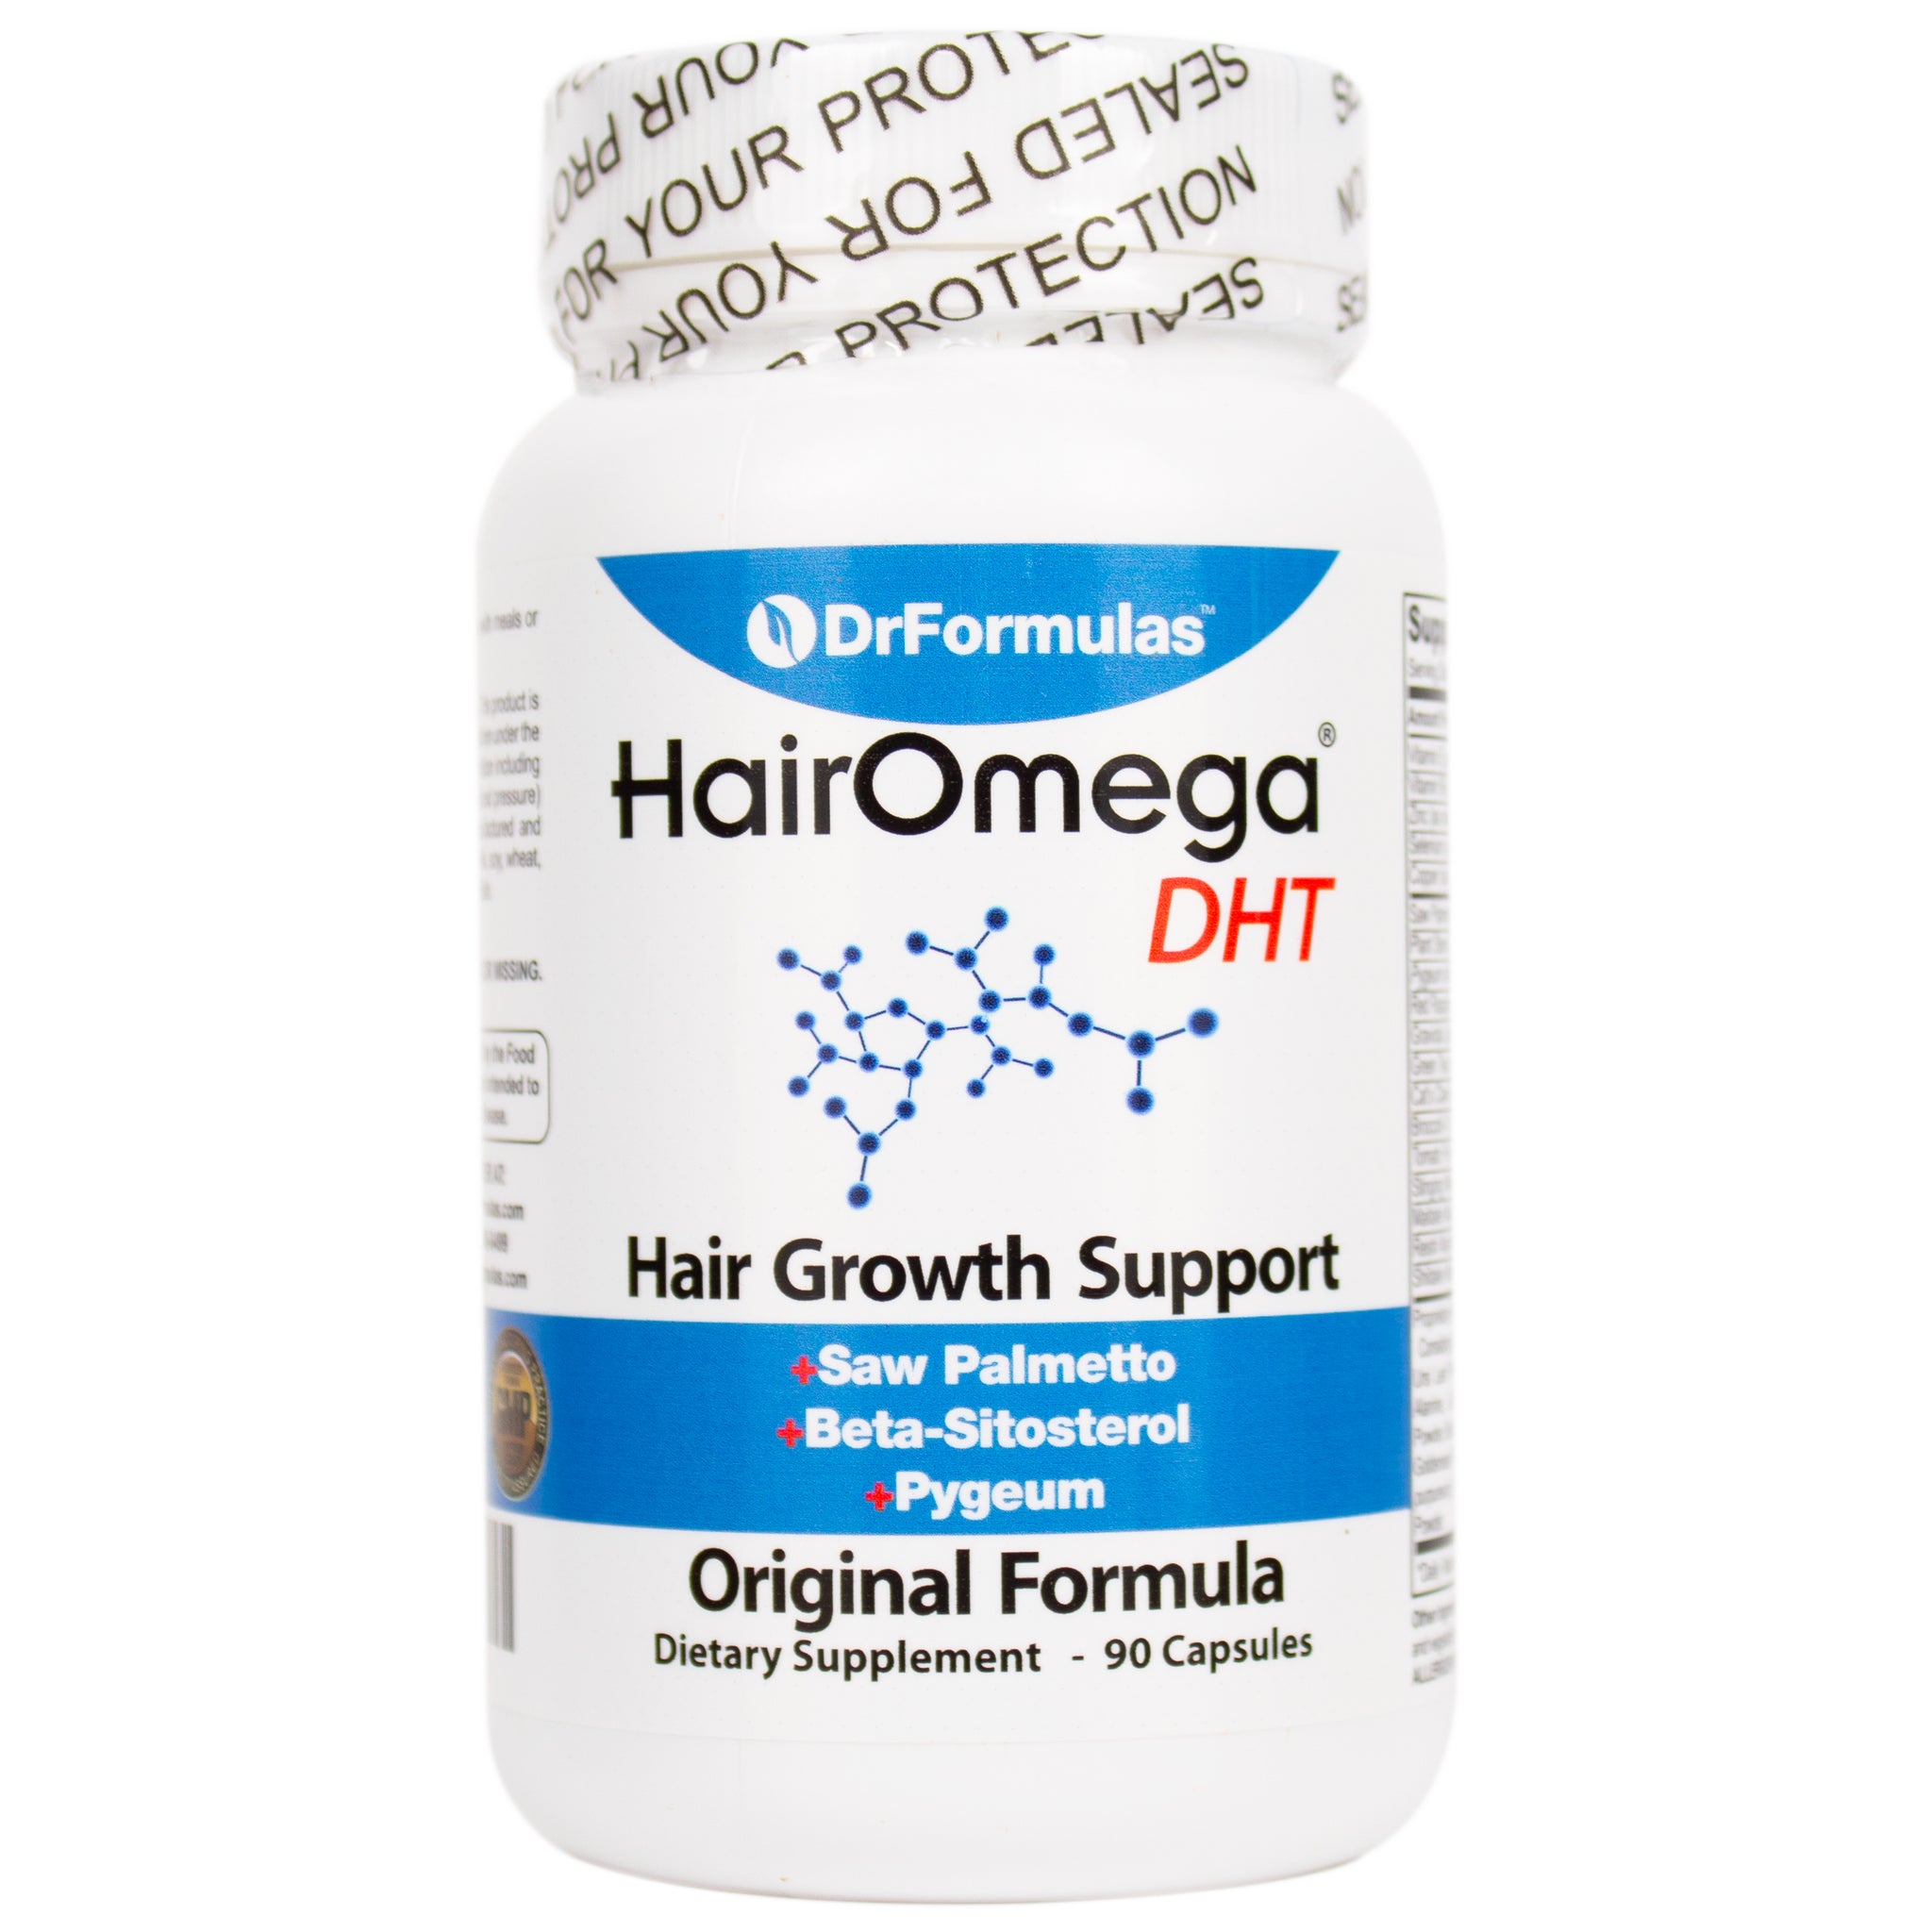 Hairomega Dht Blocker Original 33 Ingredient Formula Without Biotin Drformulas